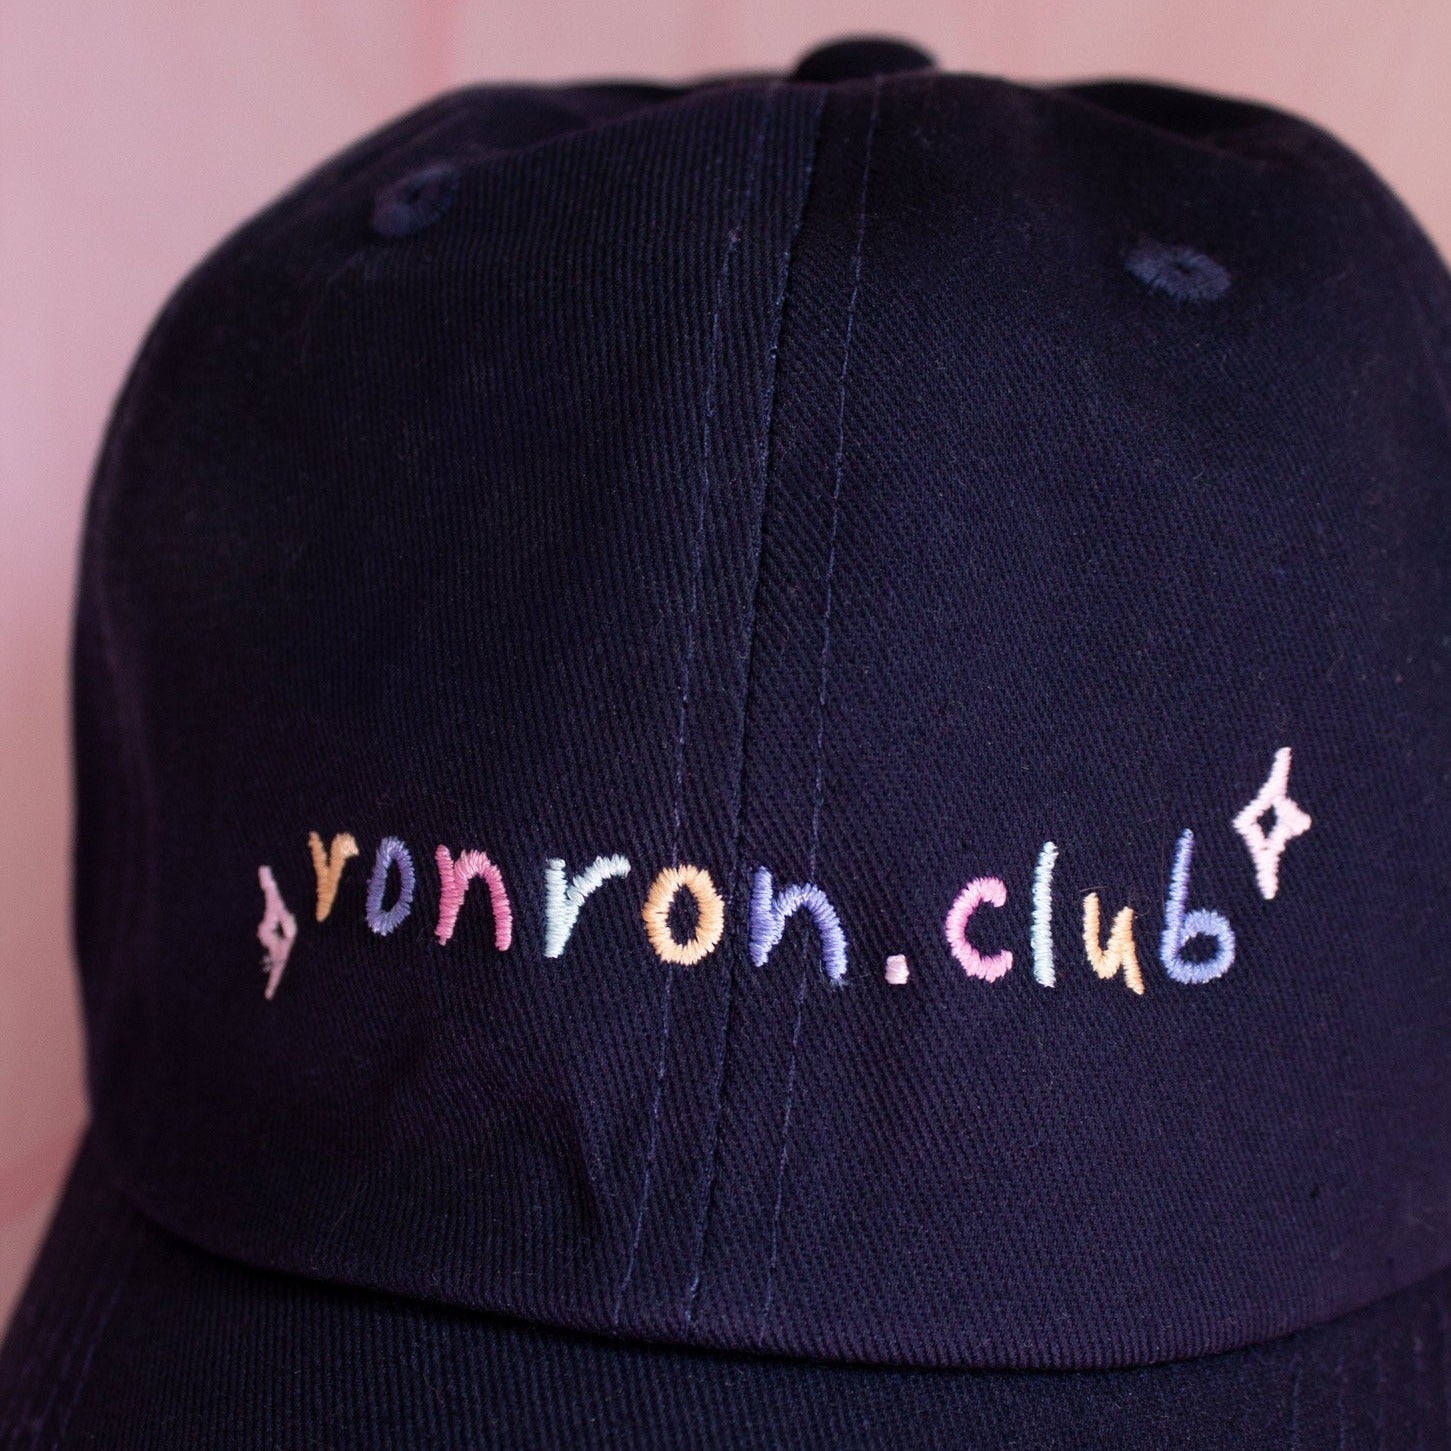 Ronron.club Dad Hat